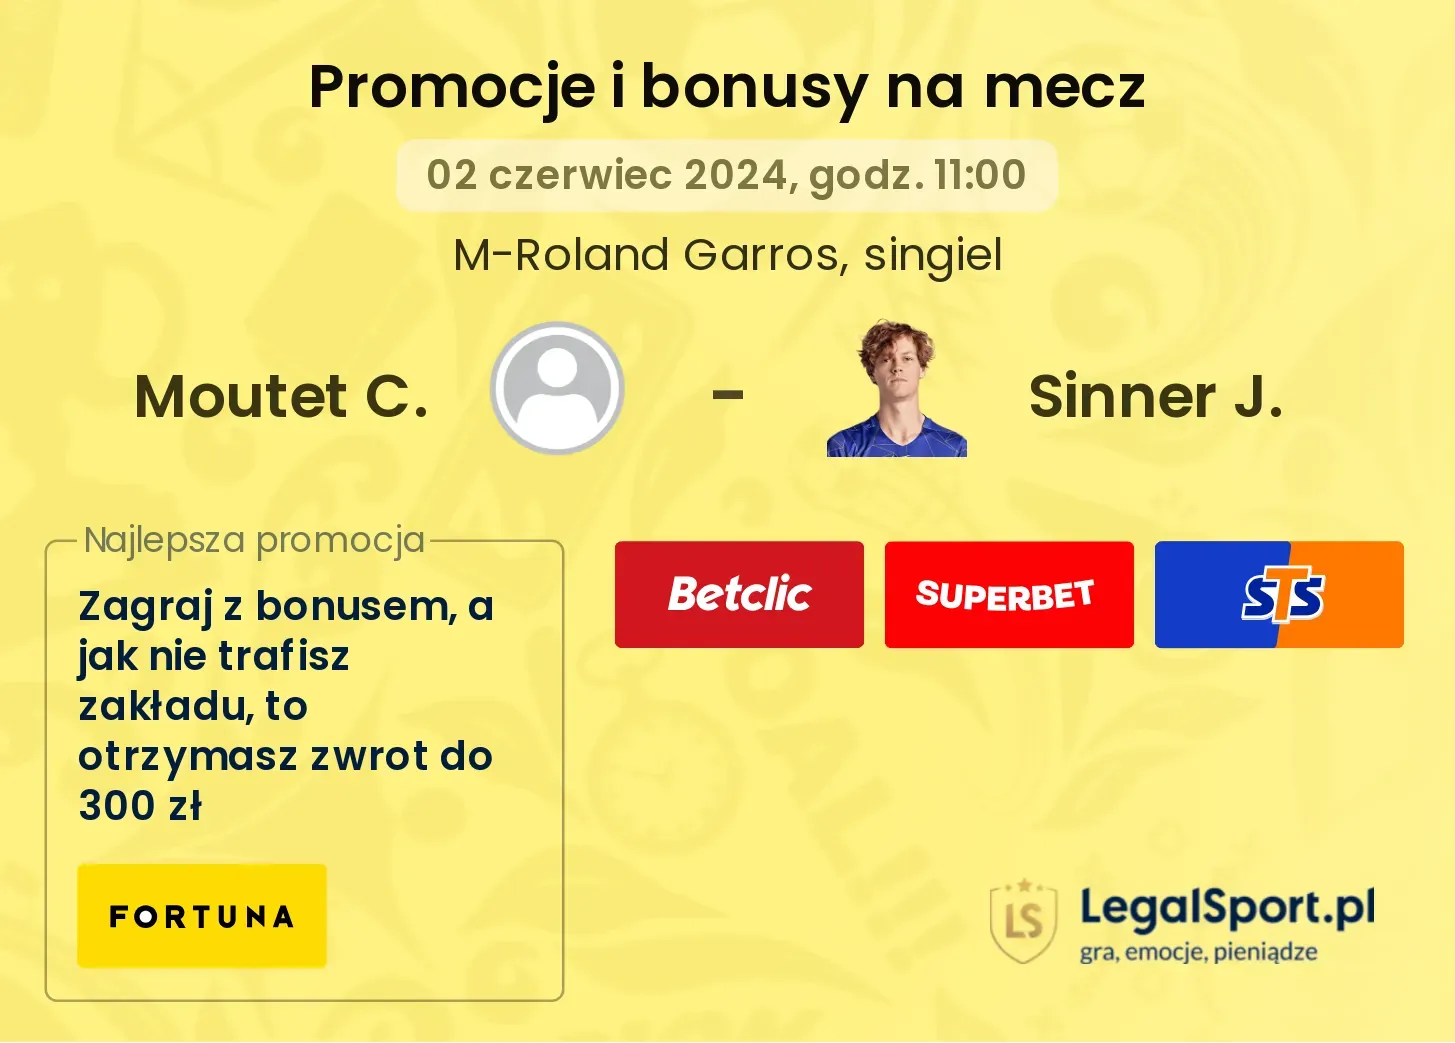 Moutet C. - Sinner J. bonusy i promocje (02.06, 11:00)